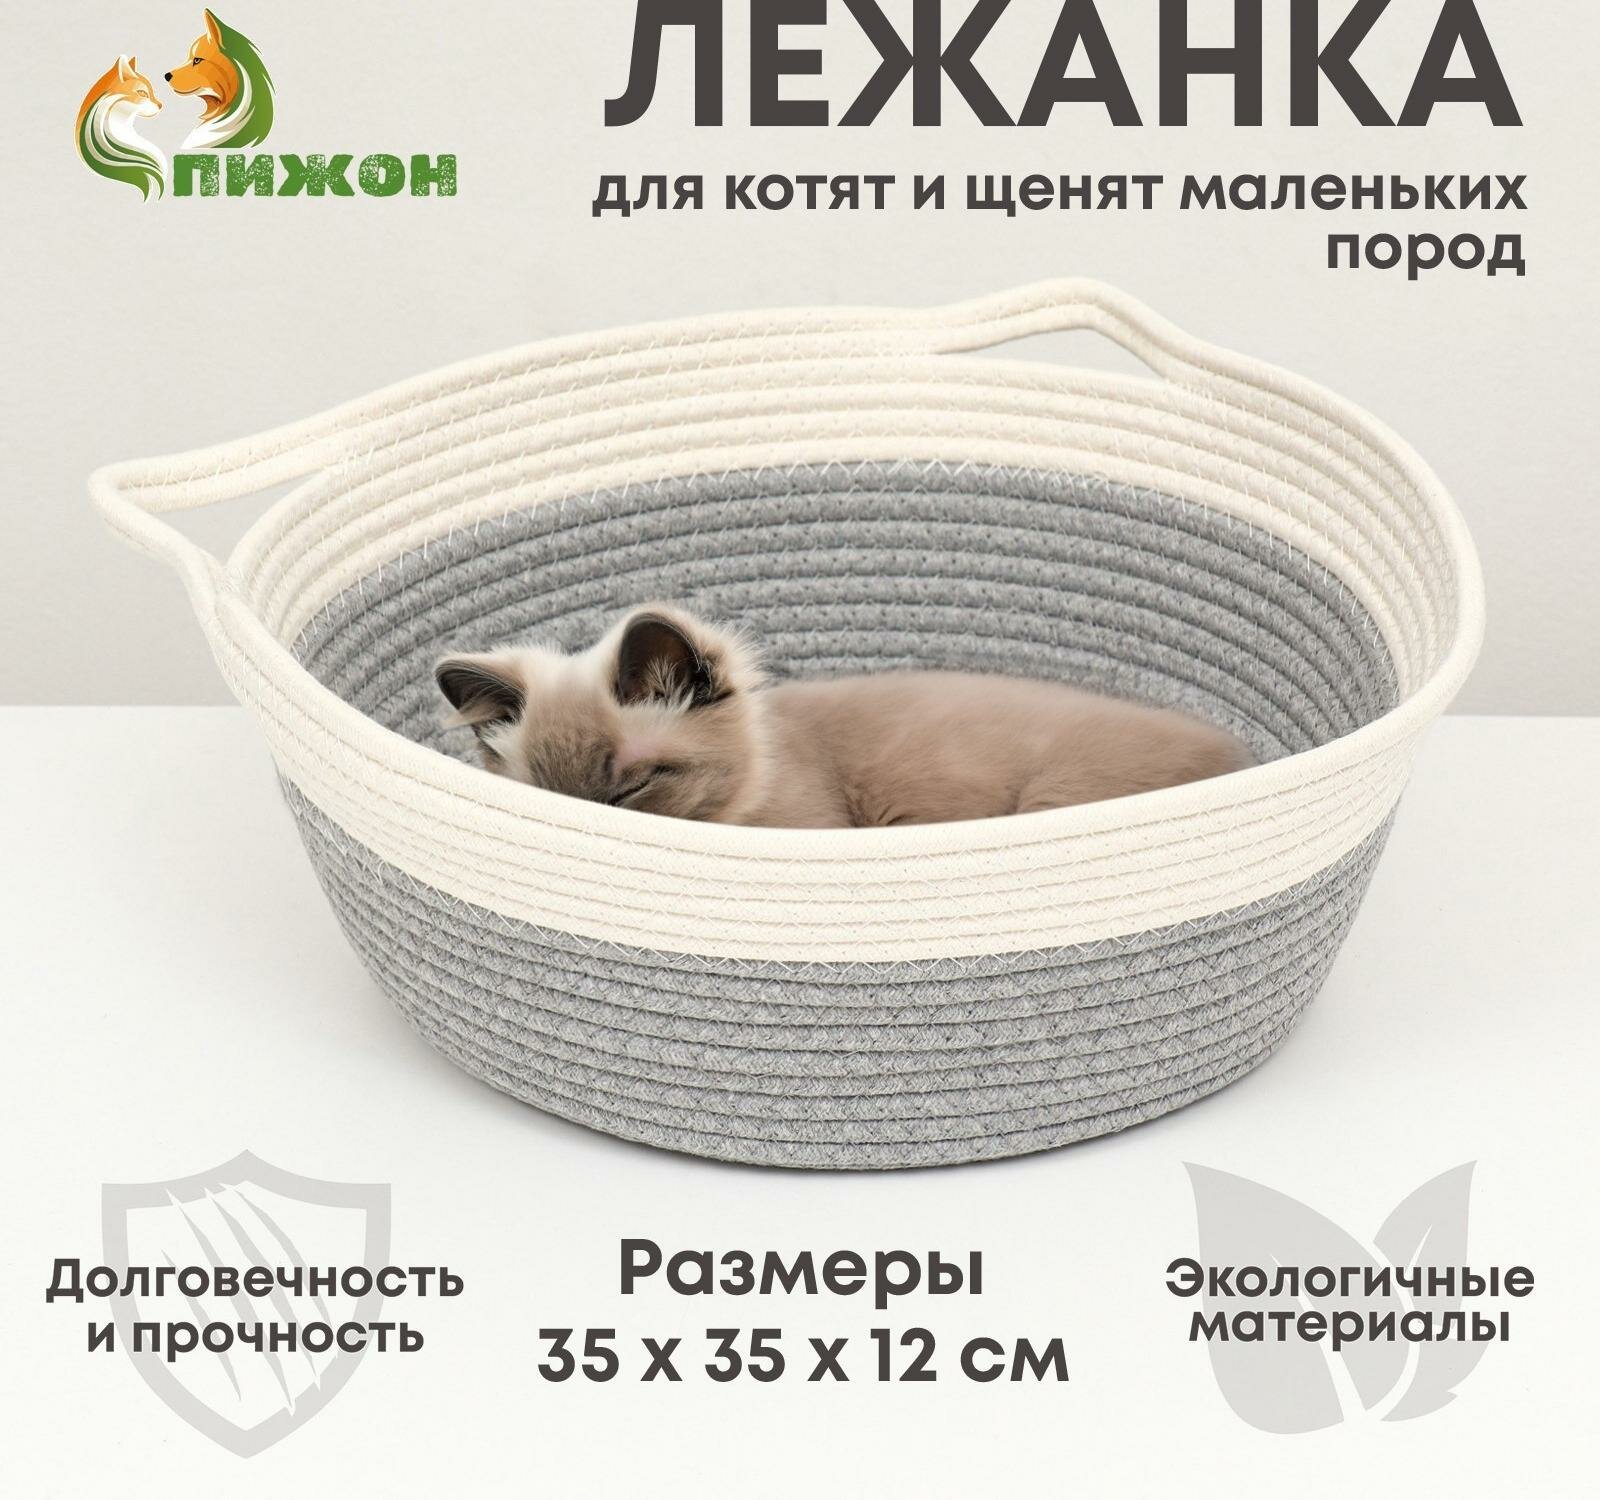 Экологичный лежак для животных (хлобчатобумажный), 35 х 35 х 12 см, вес до 5 кг, бело-серый